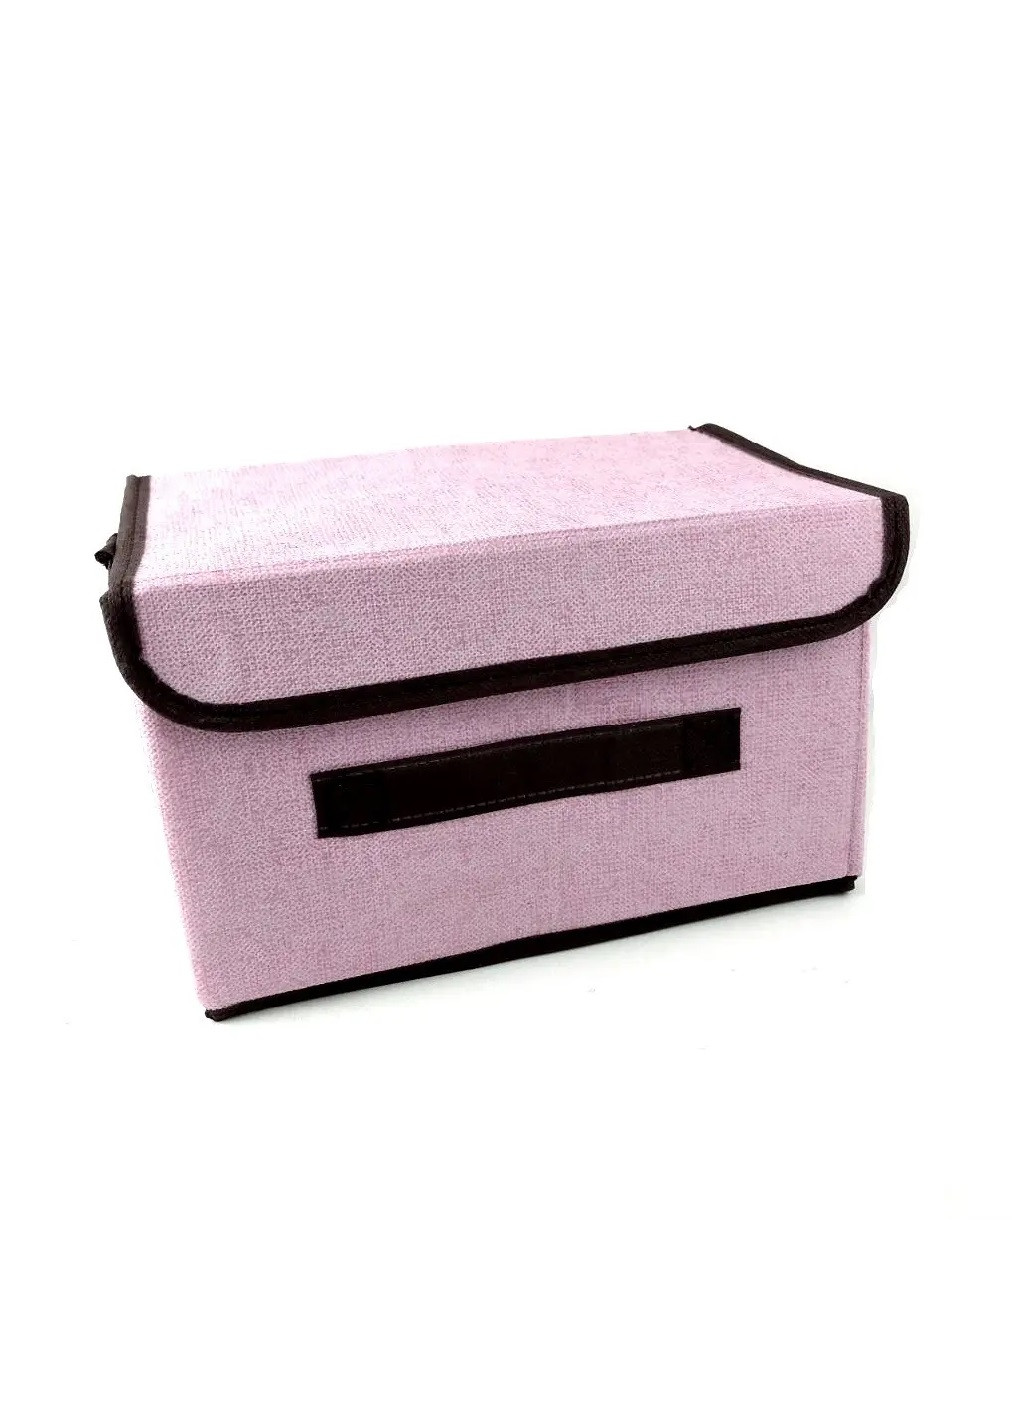 Органайзер ящик бокс короб для хранения вещей одежды белья игрушек с крышкой на липучке 26х18.5х16 см (474613-Prob) Розовый Unbranded (259109591)